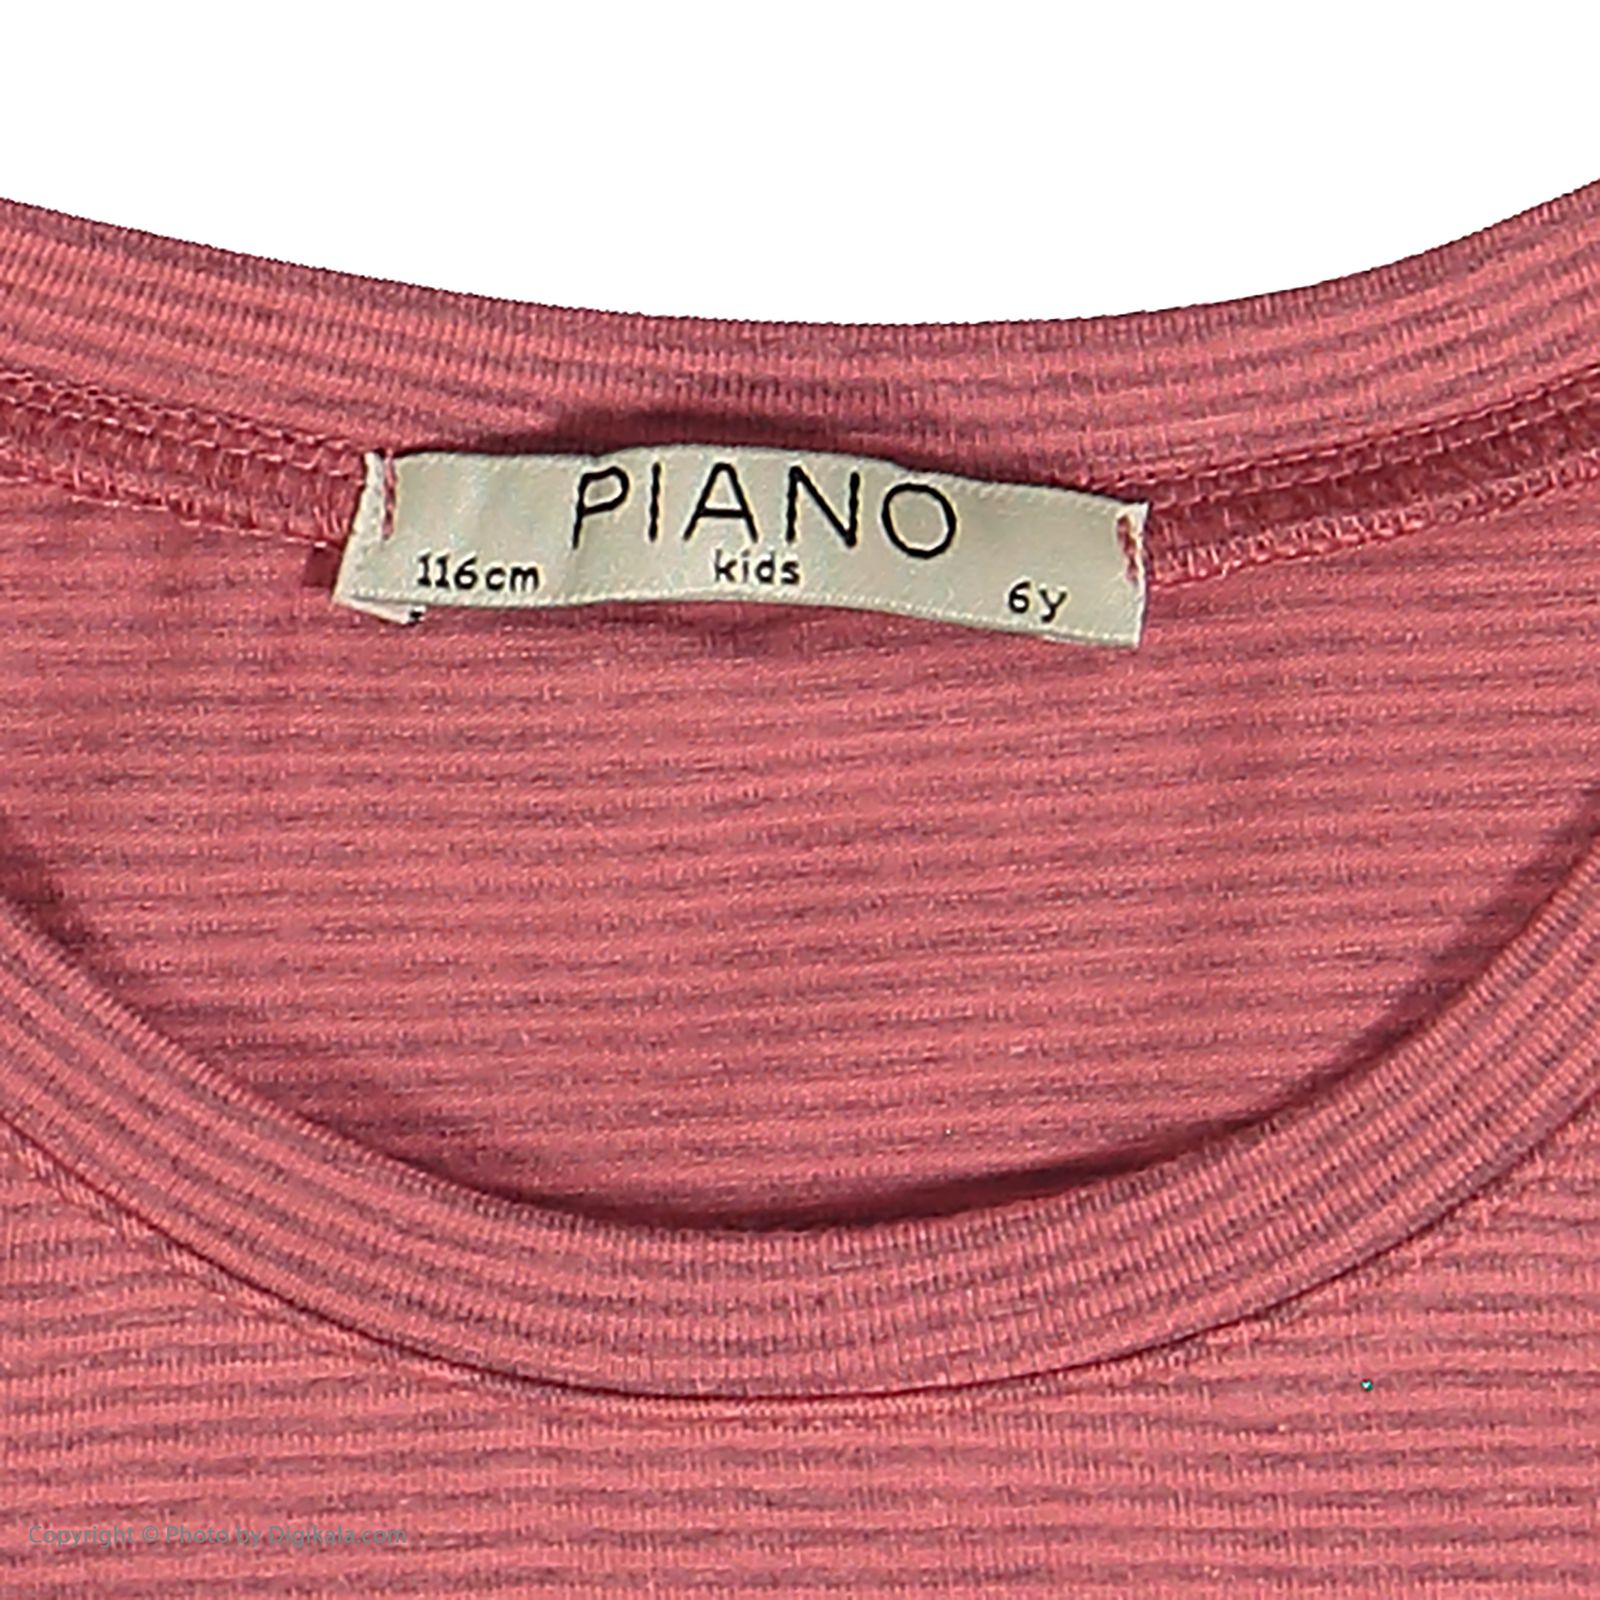 پیراهن دخترانه پیانو مدل 01401-22 -  - 4